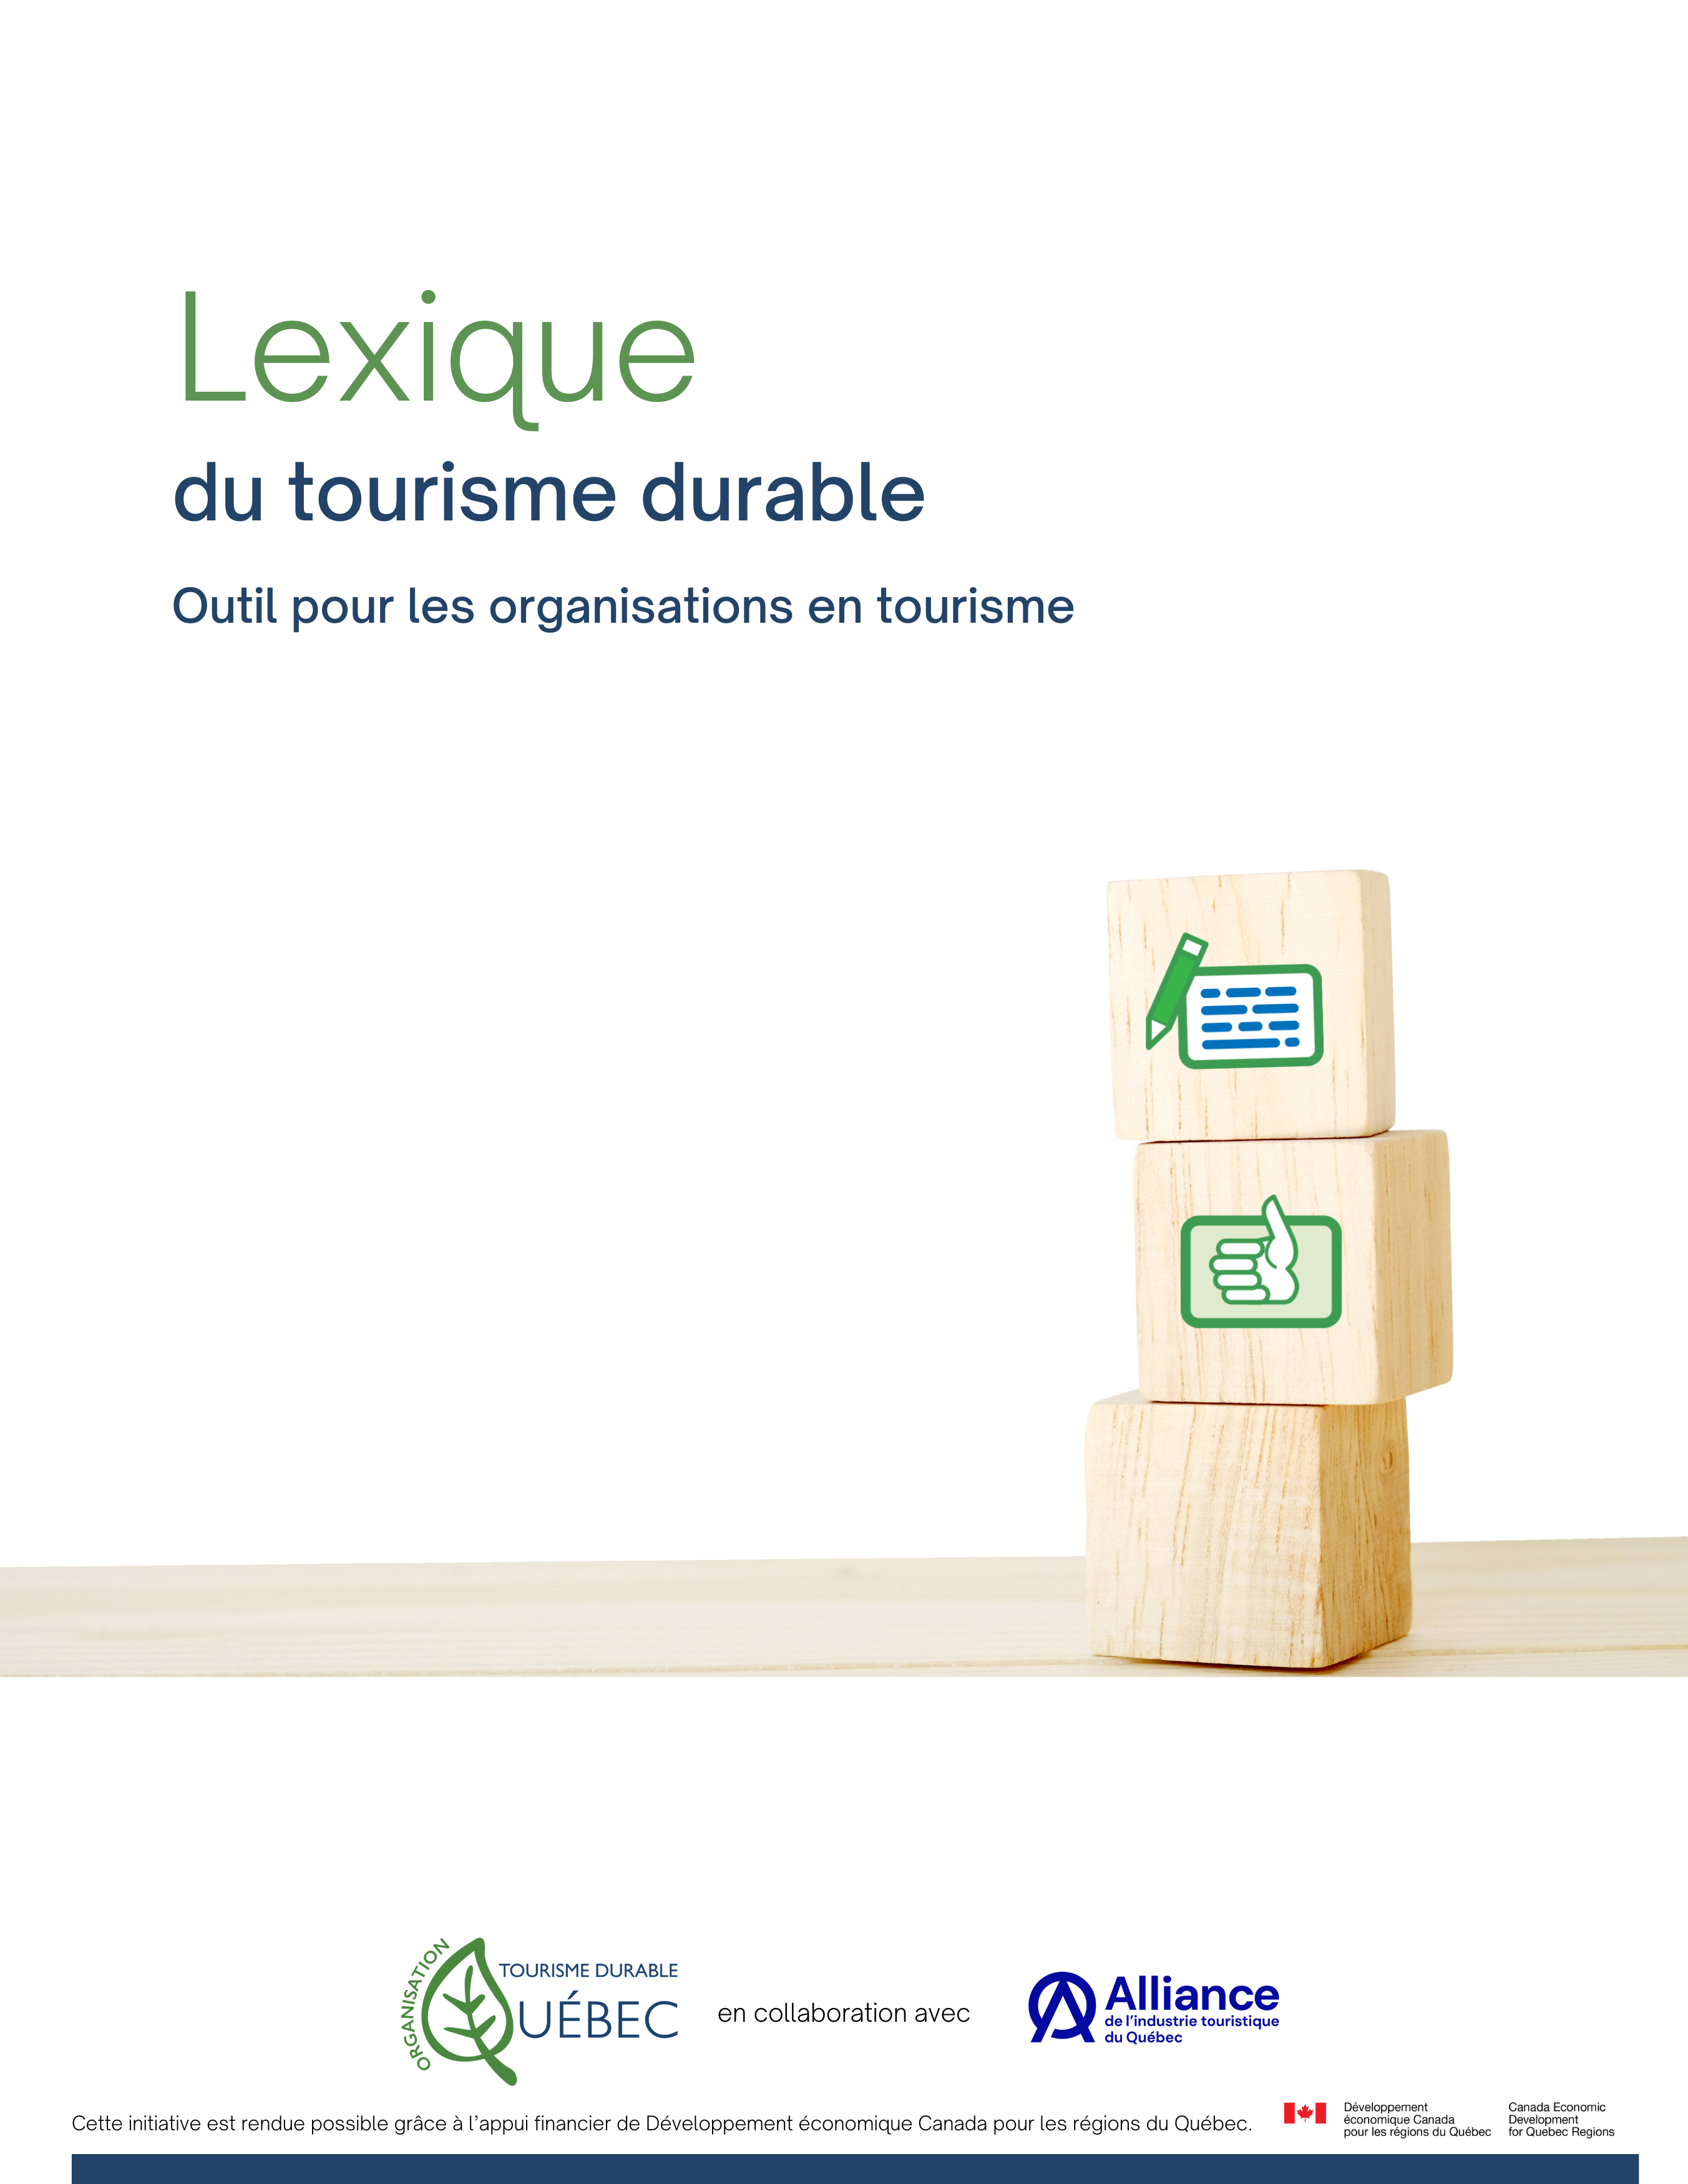 Lexique du tourisme durable - Tourisme durable Québec